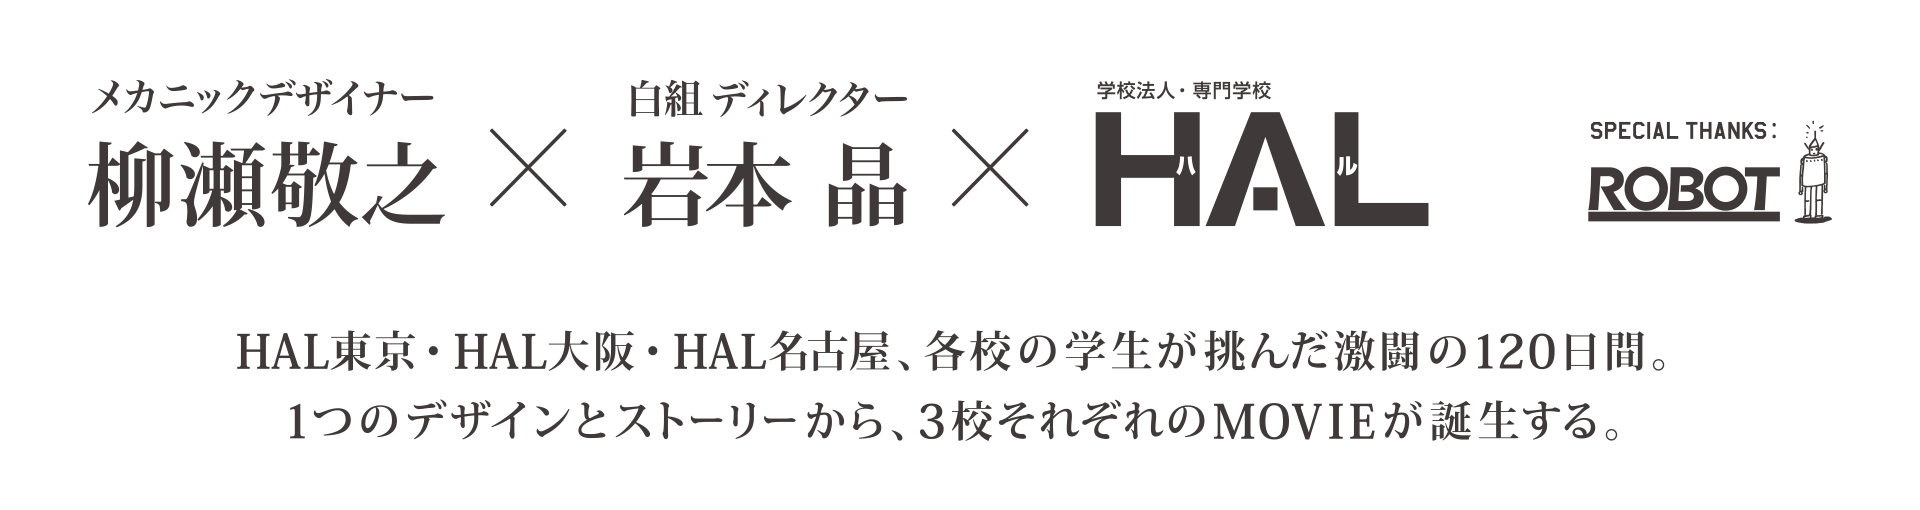 柳瀬敬之×岩本晶×HAL SPECIAL THANKS ROBOT  HAL東京・HAL大阪・HAL名古屋、各校の学生が挑んだ激闘の120日間。1つのデザインとストーリーから、3校それぞれのMOVIEが誕生する。